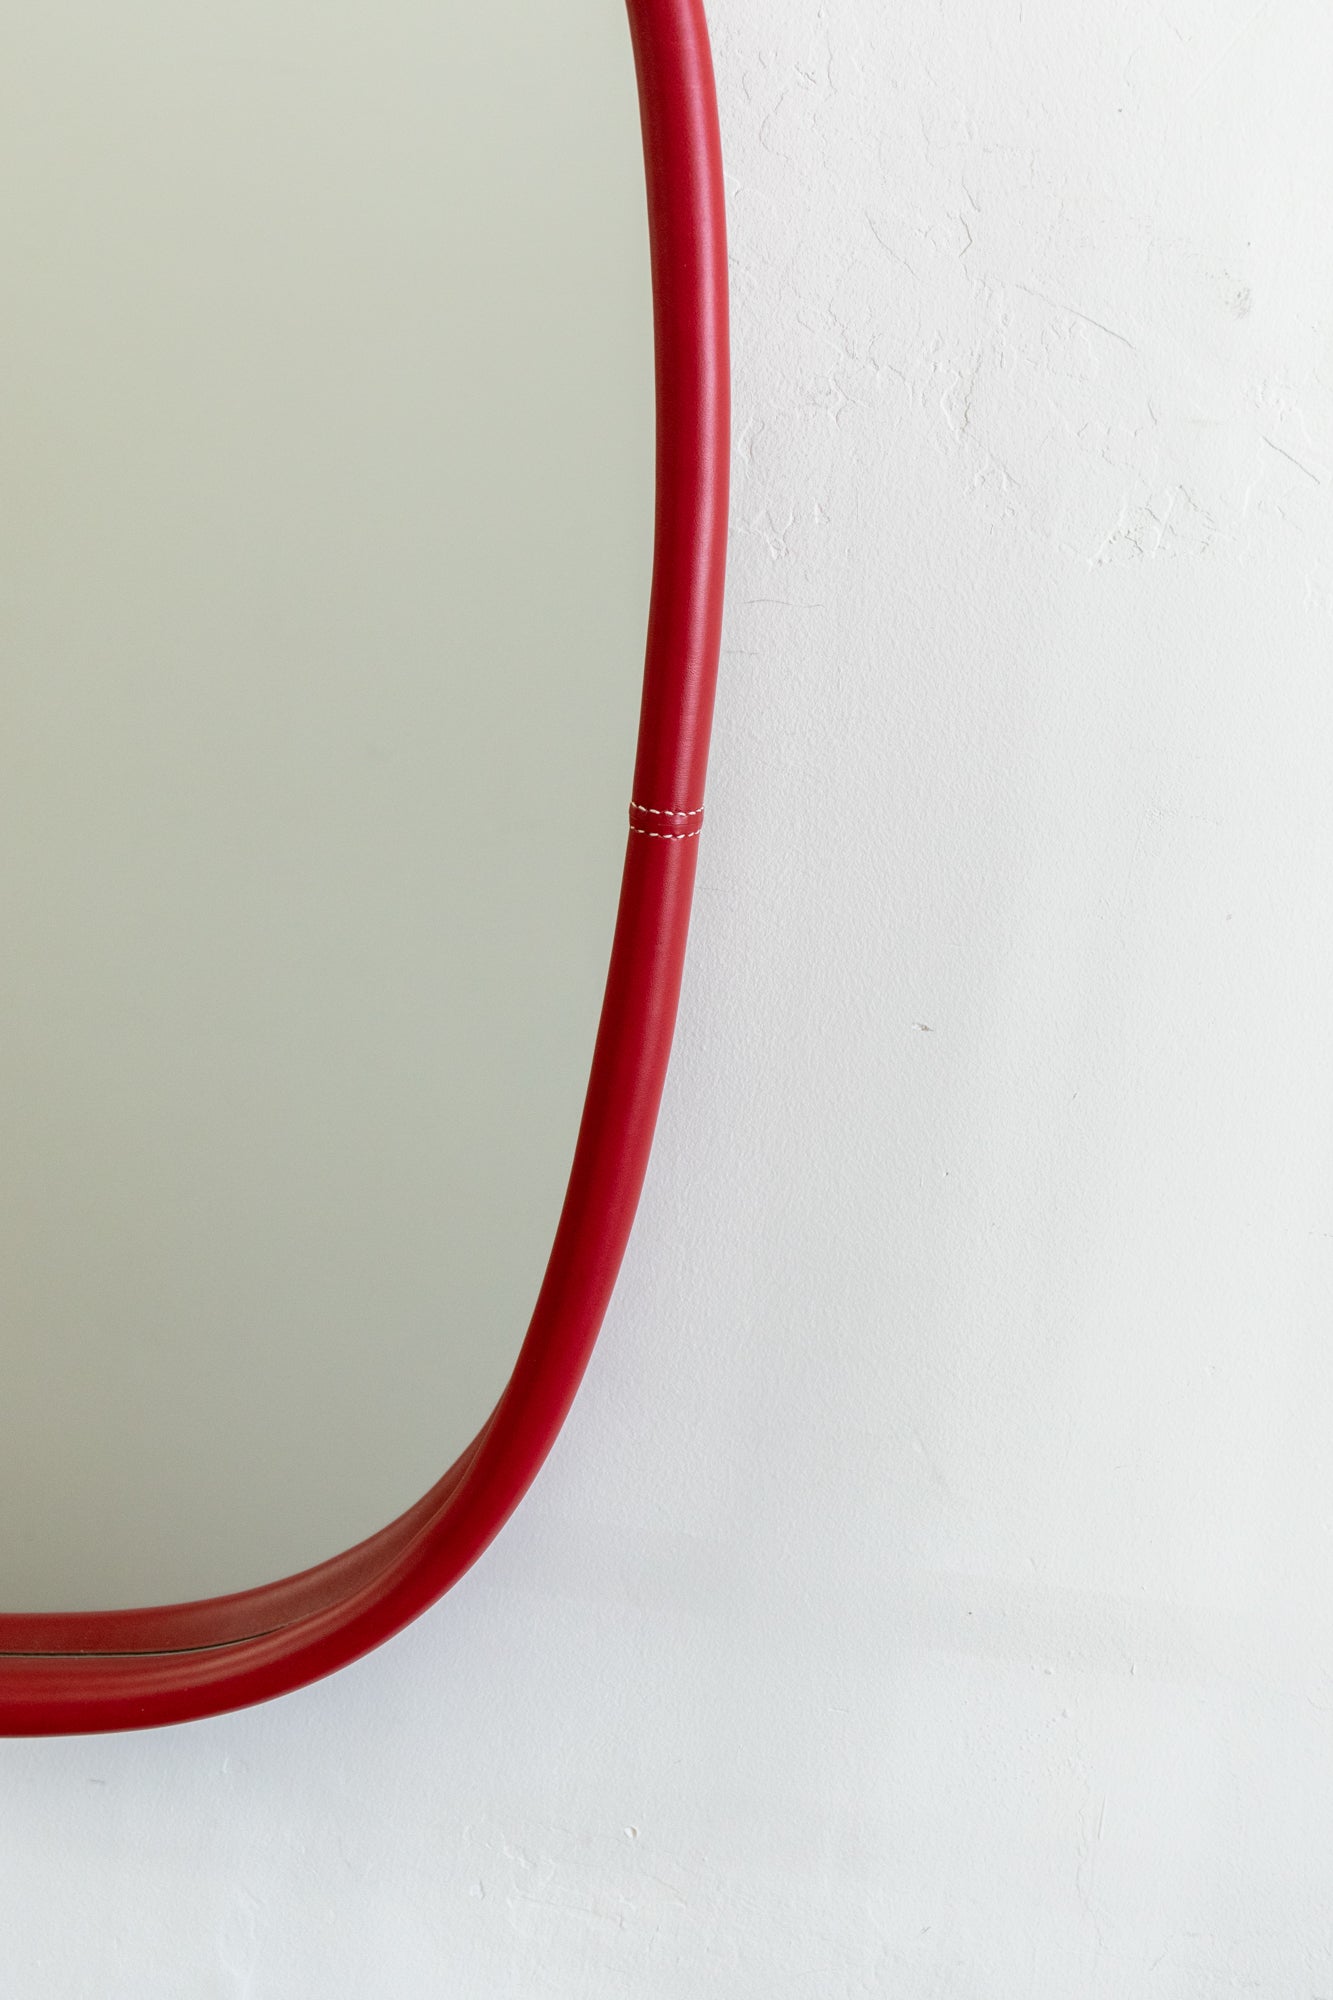 Otis Ingrams, Red Leather Mirror